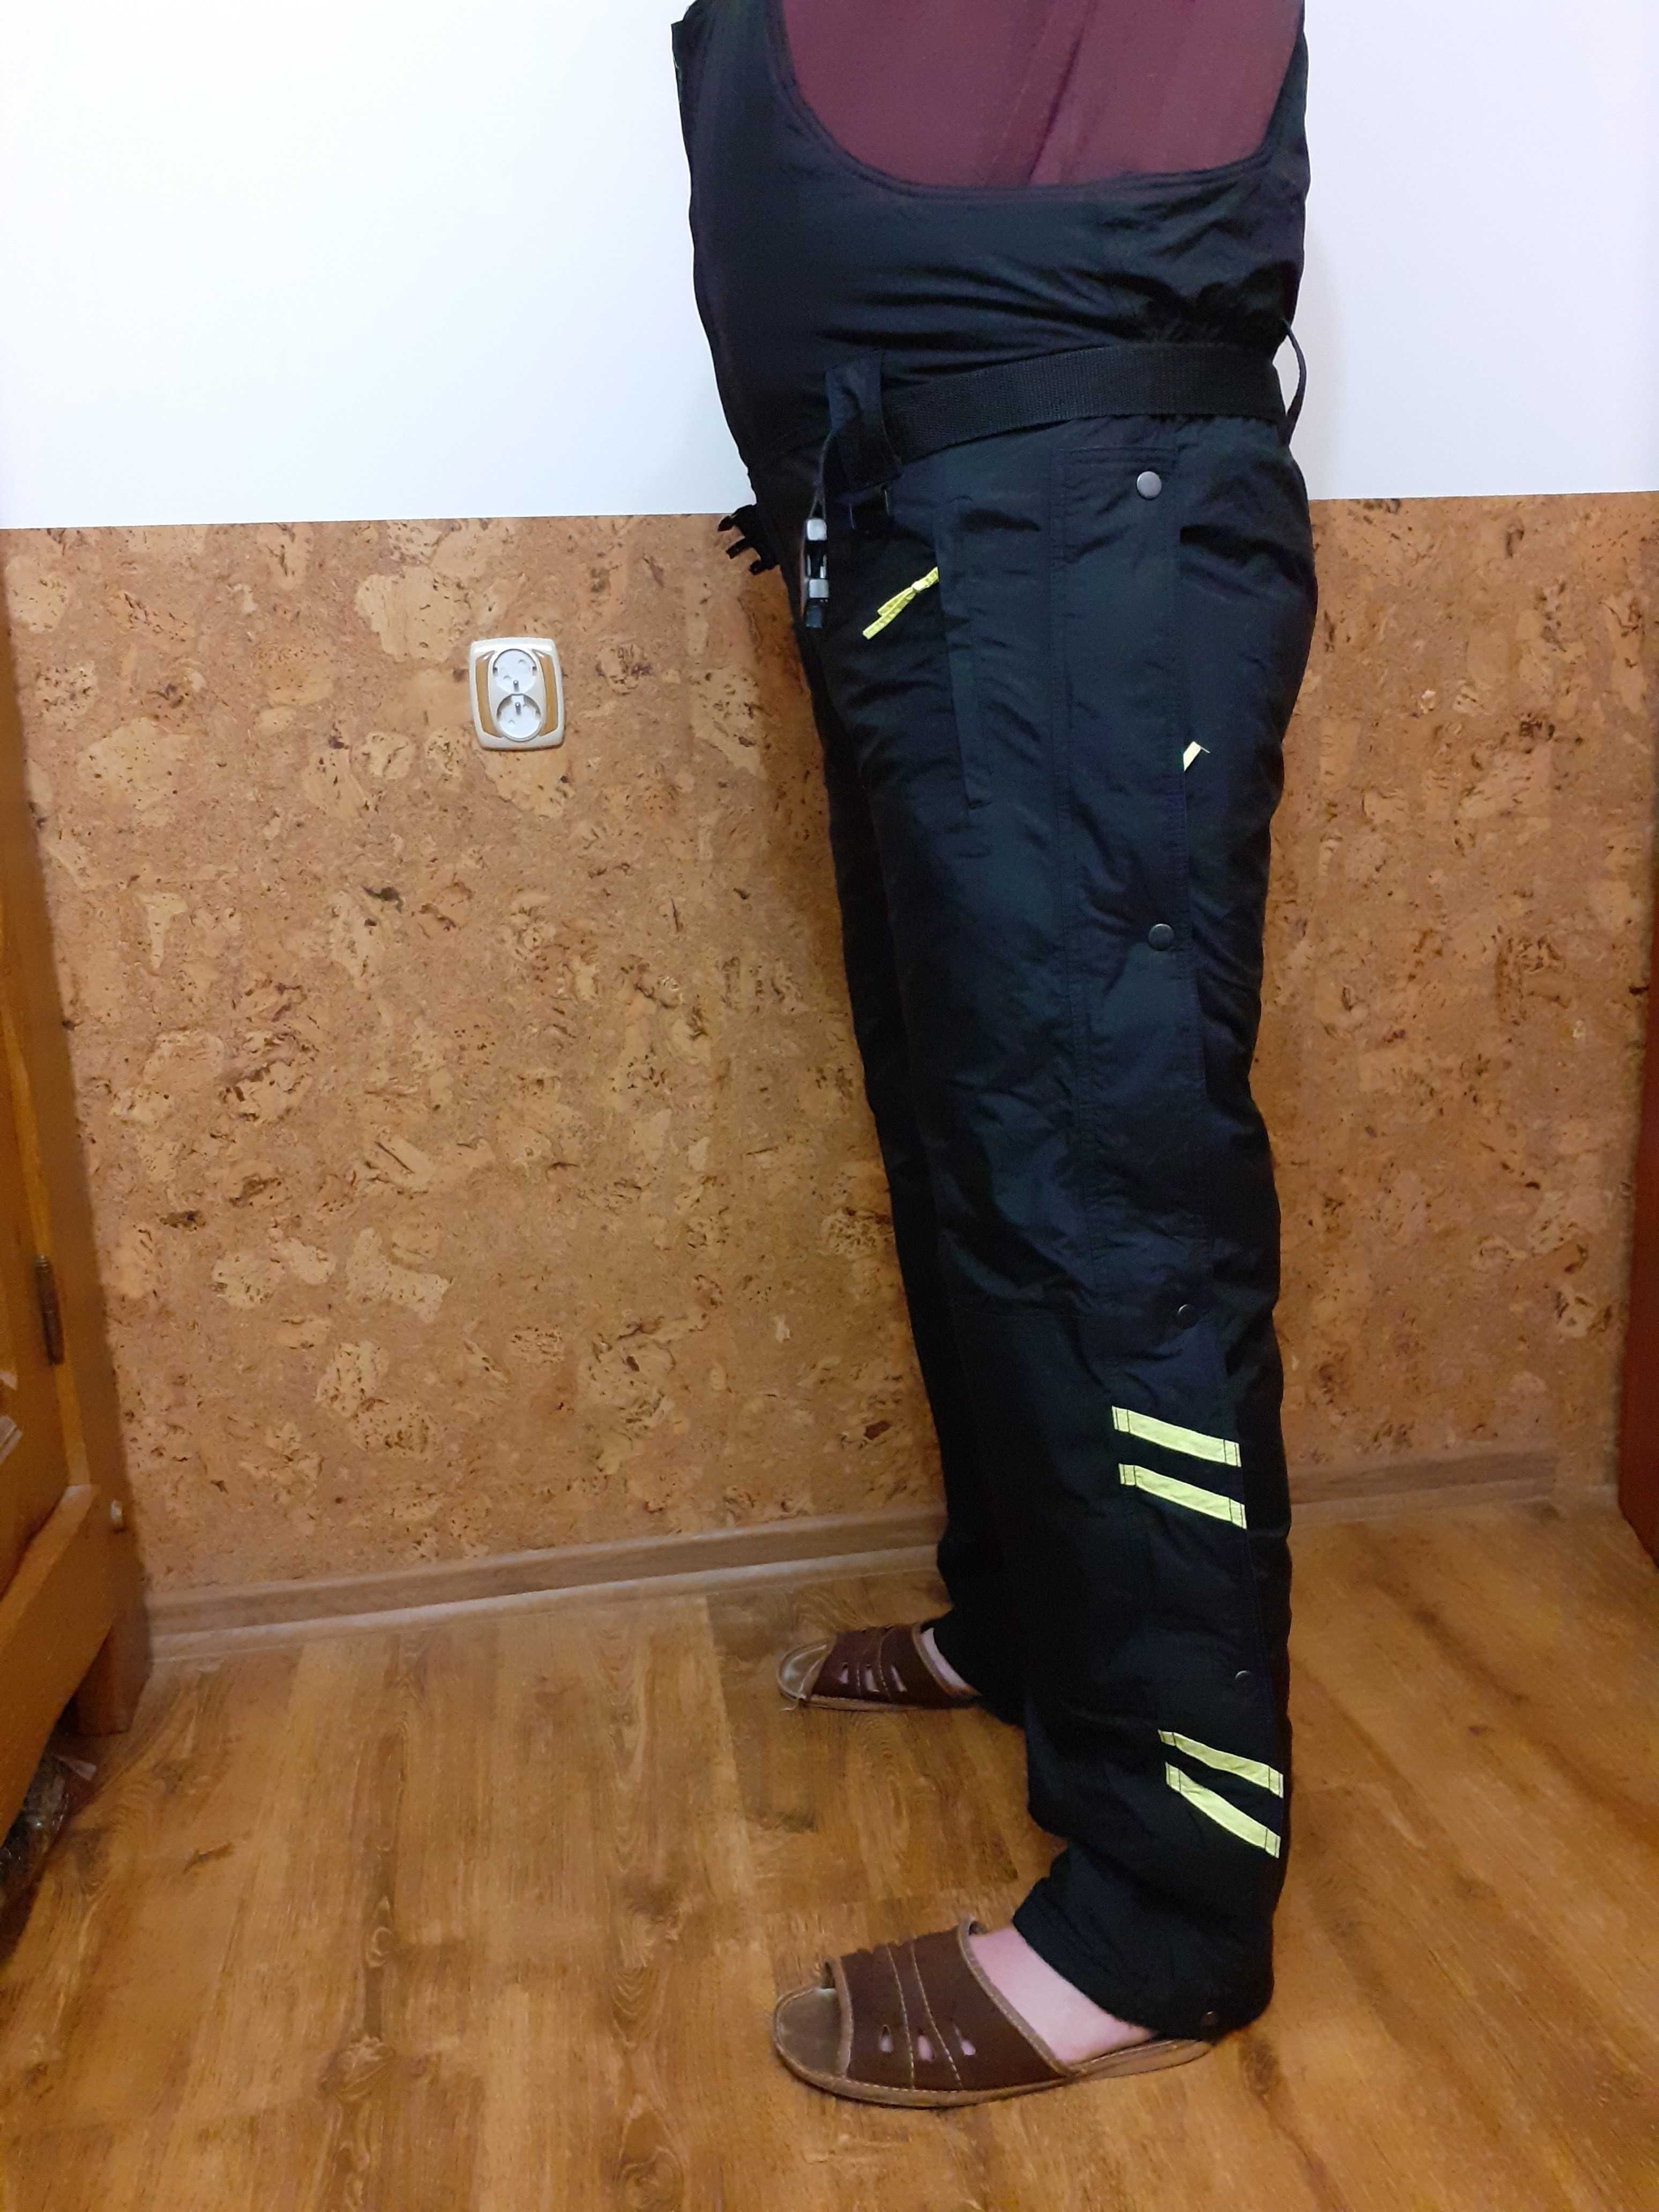 Spodnie narciarskie snowboardowe norweskie L/XL na wzrost 185 cm